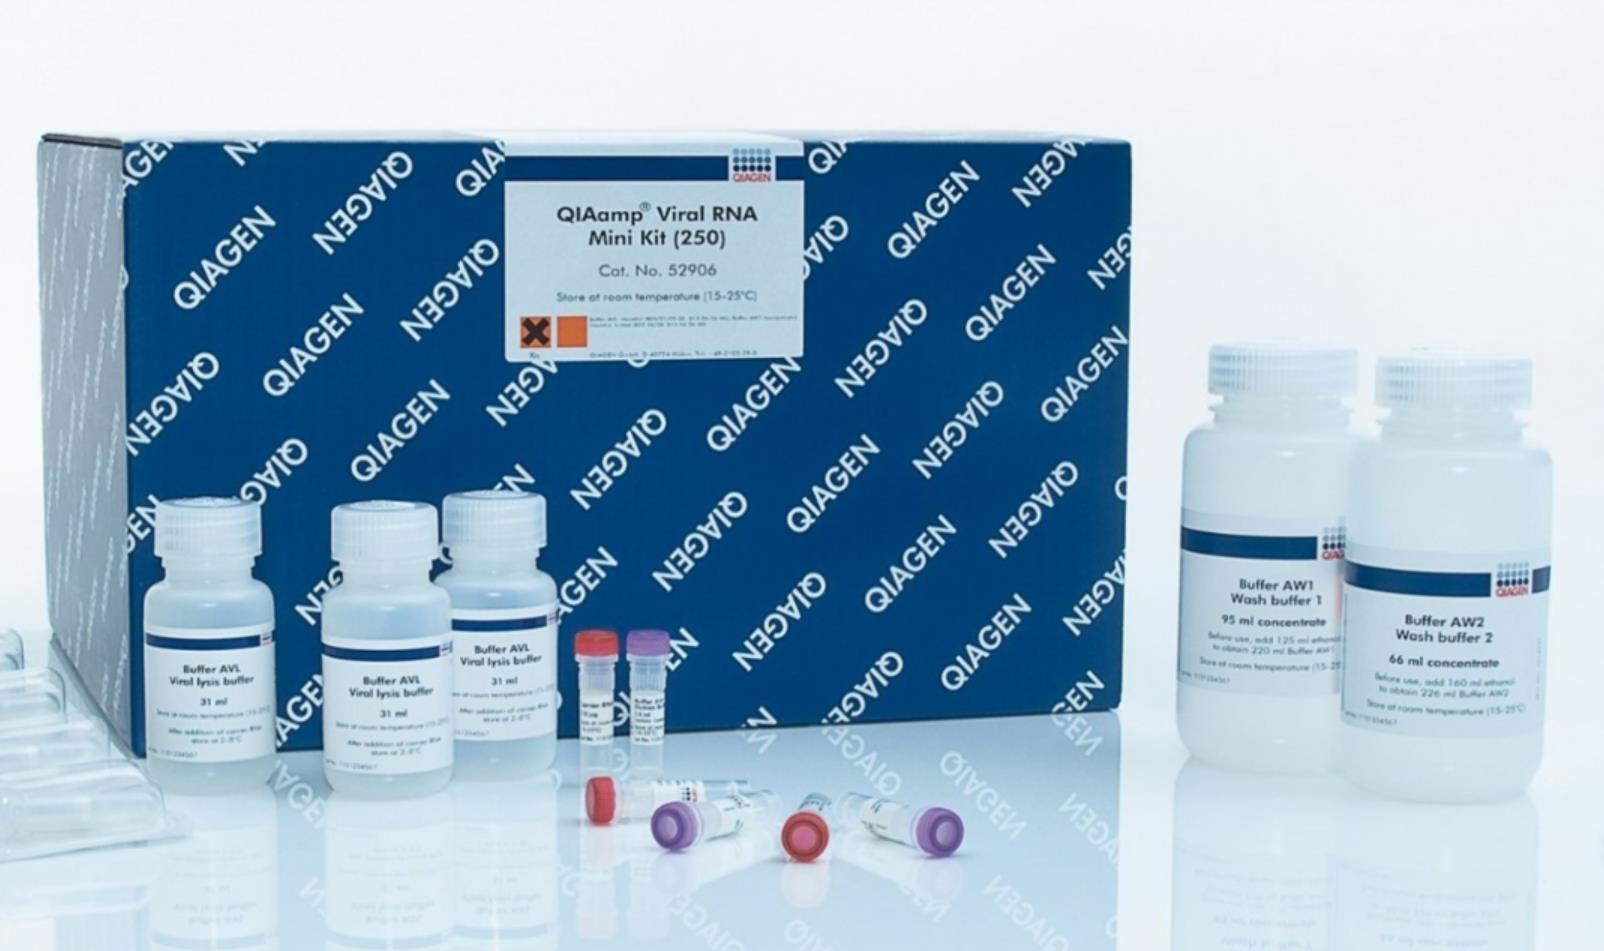 【凯杰】QIAamp Viral RNA Mini Kit (250)【52906】-云医购